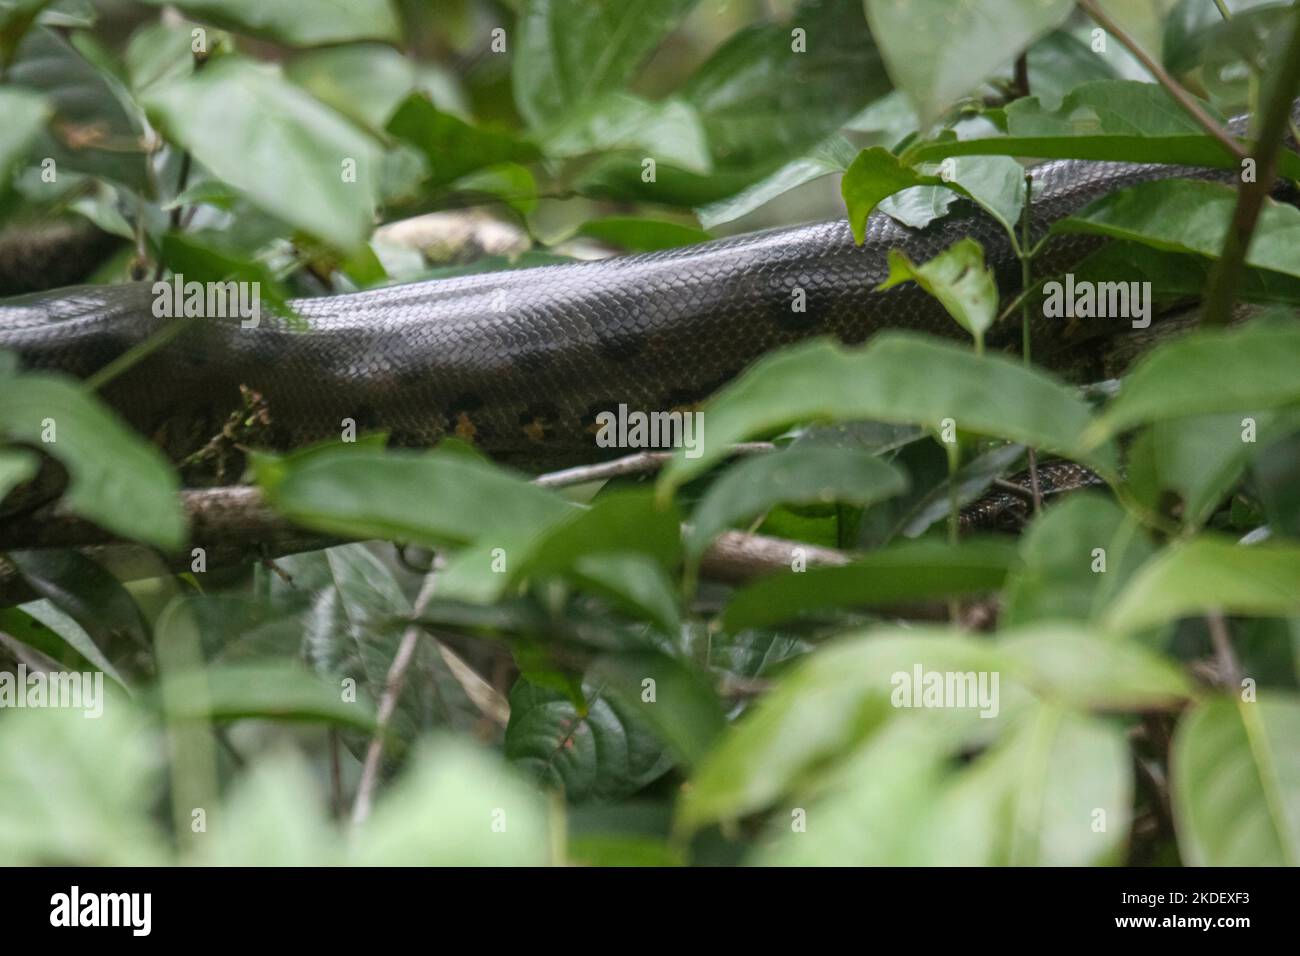 Eine wilde grüne Anakonda (Eunectes murinus), die weltweit größte ruhende Schlangenart im Wildreservat Cuyabeno im ecuadorianischen Amazonas. Die grüne ana Stockfoto